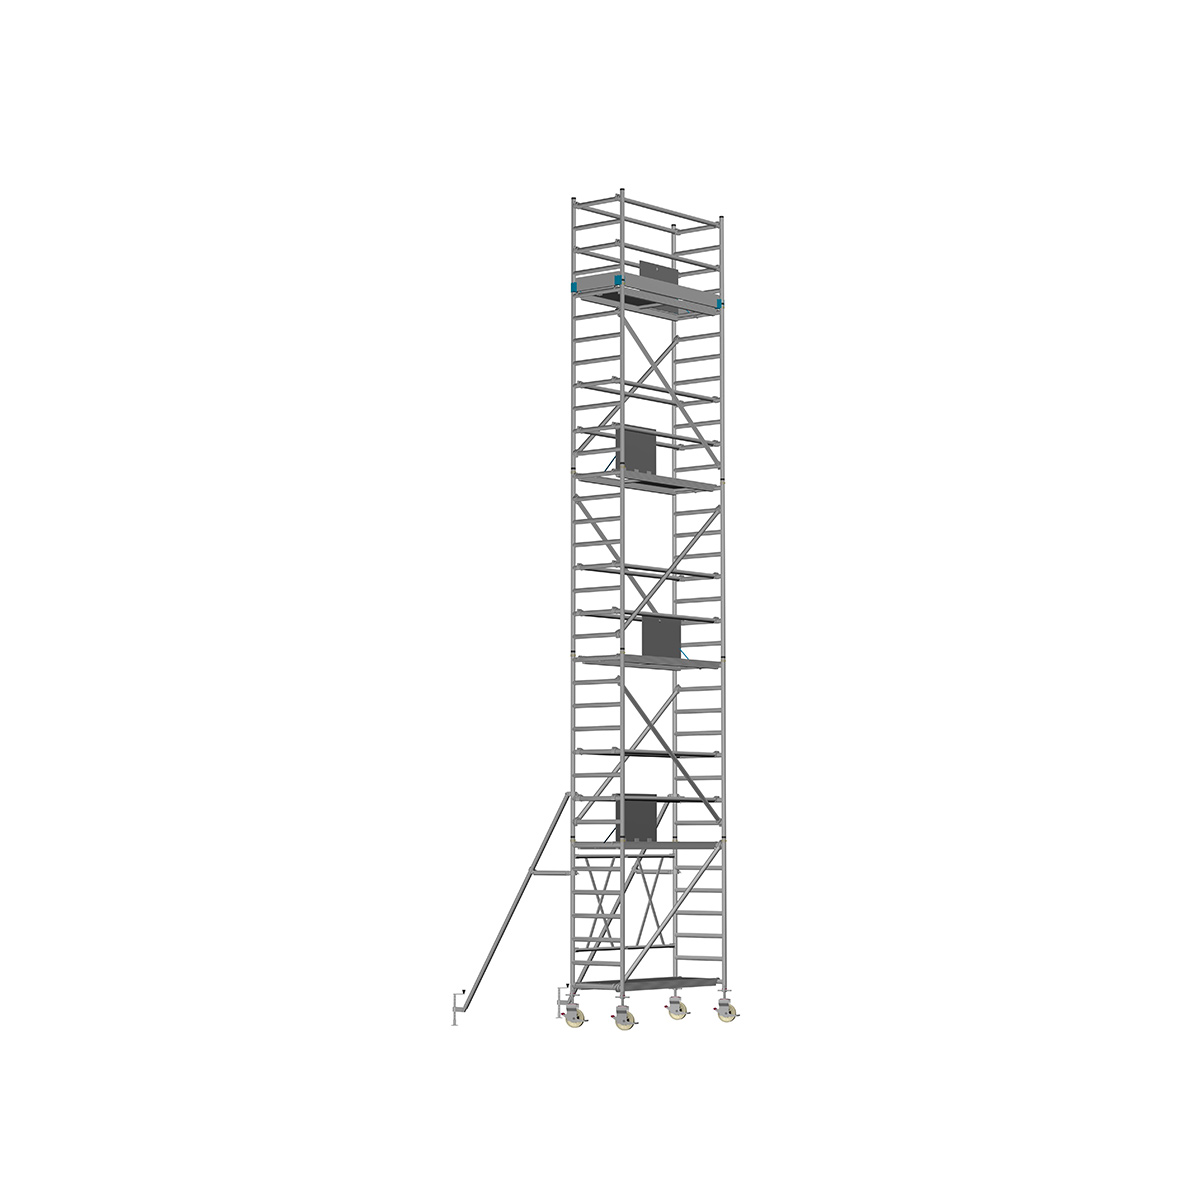 Chiemsee 2 PROFI- Länge: 2,54 m - Breite: 0,74 m, Standhöhe 4,00 m